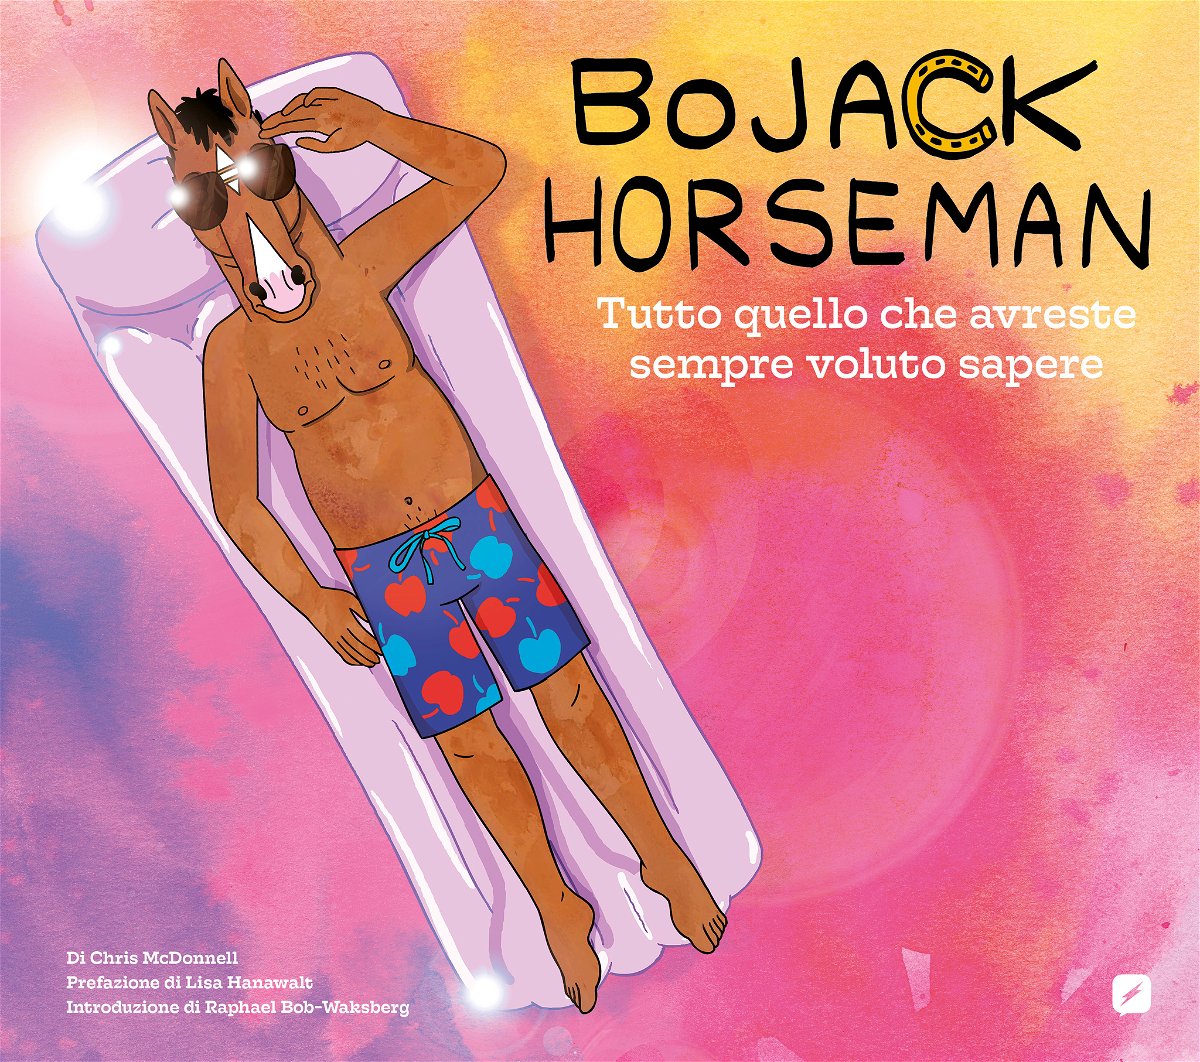 La copertina del libro dedicato alla serie tv BoJack Horseman